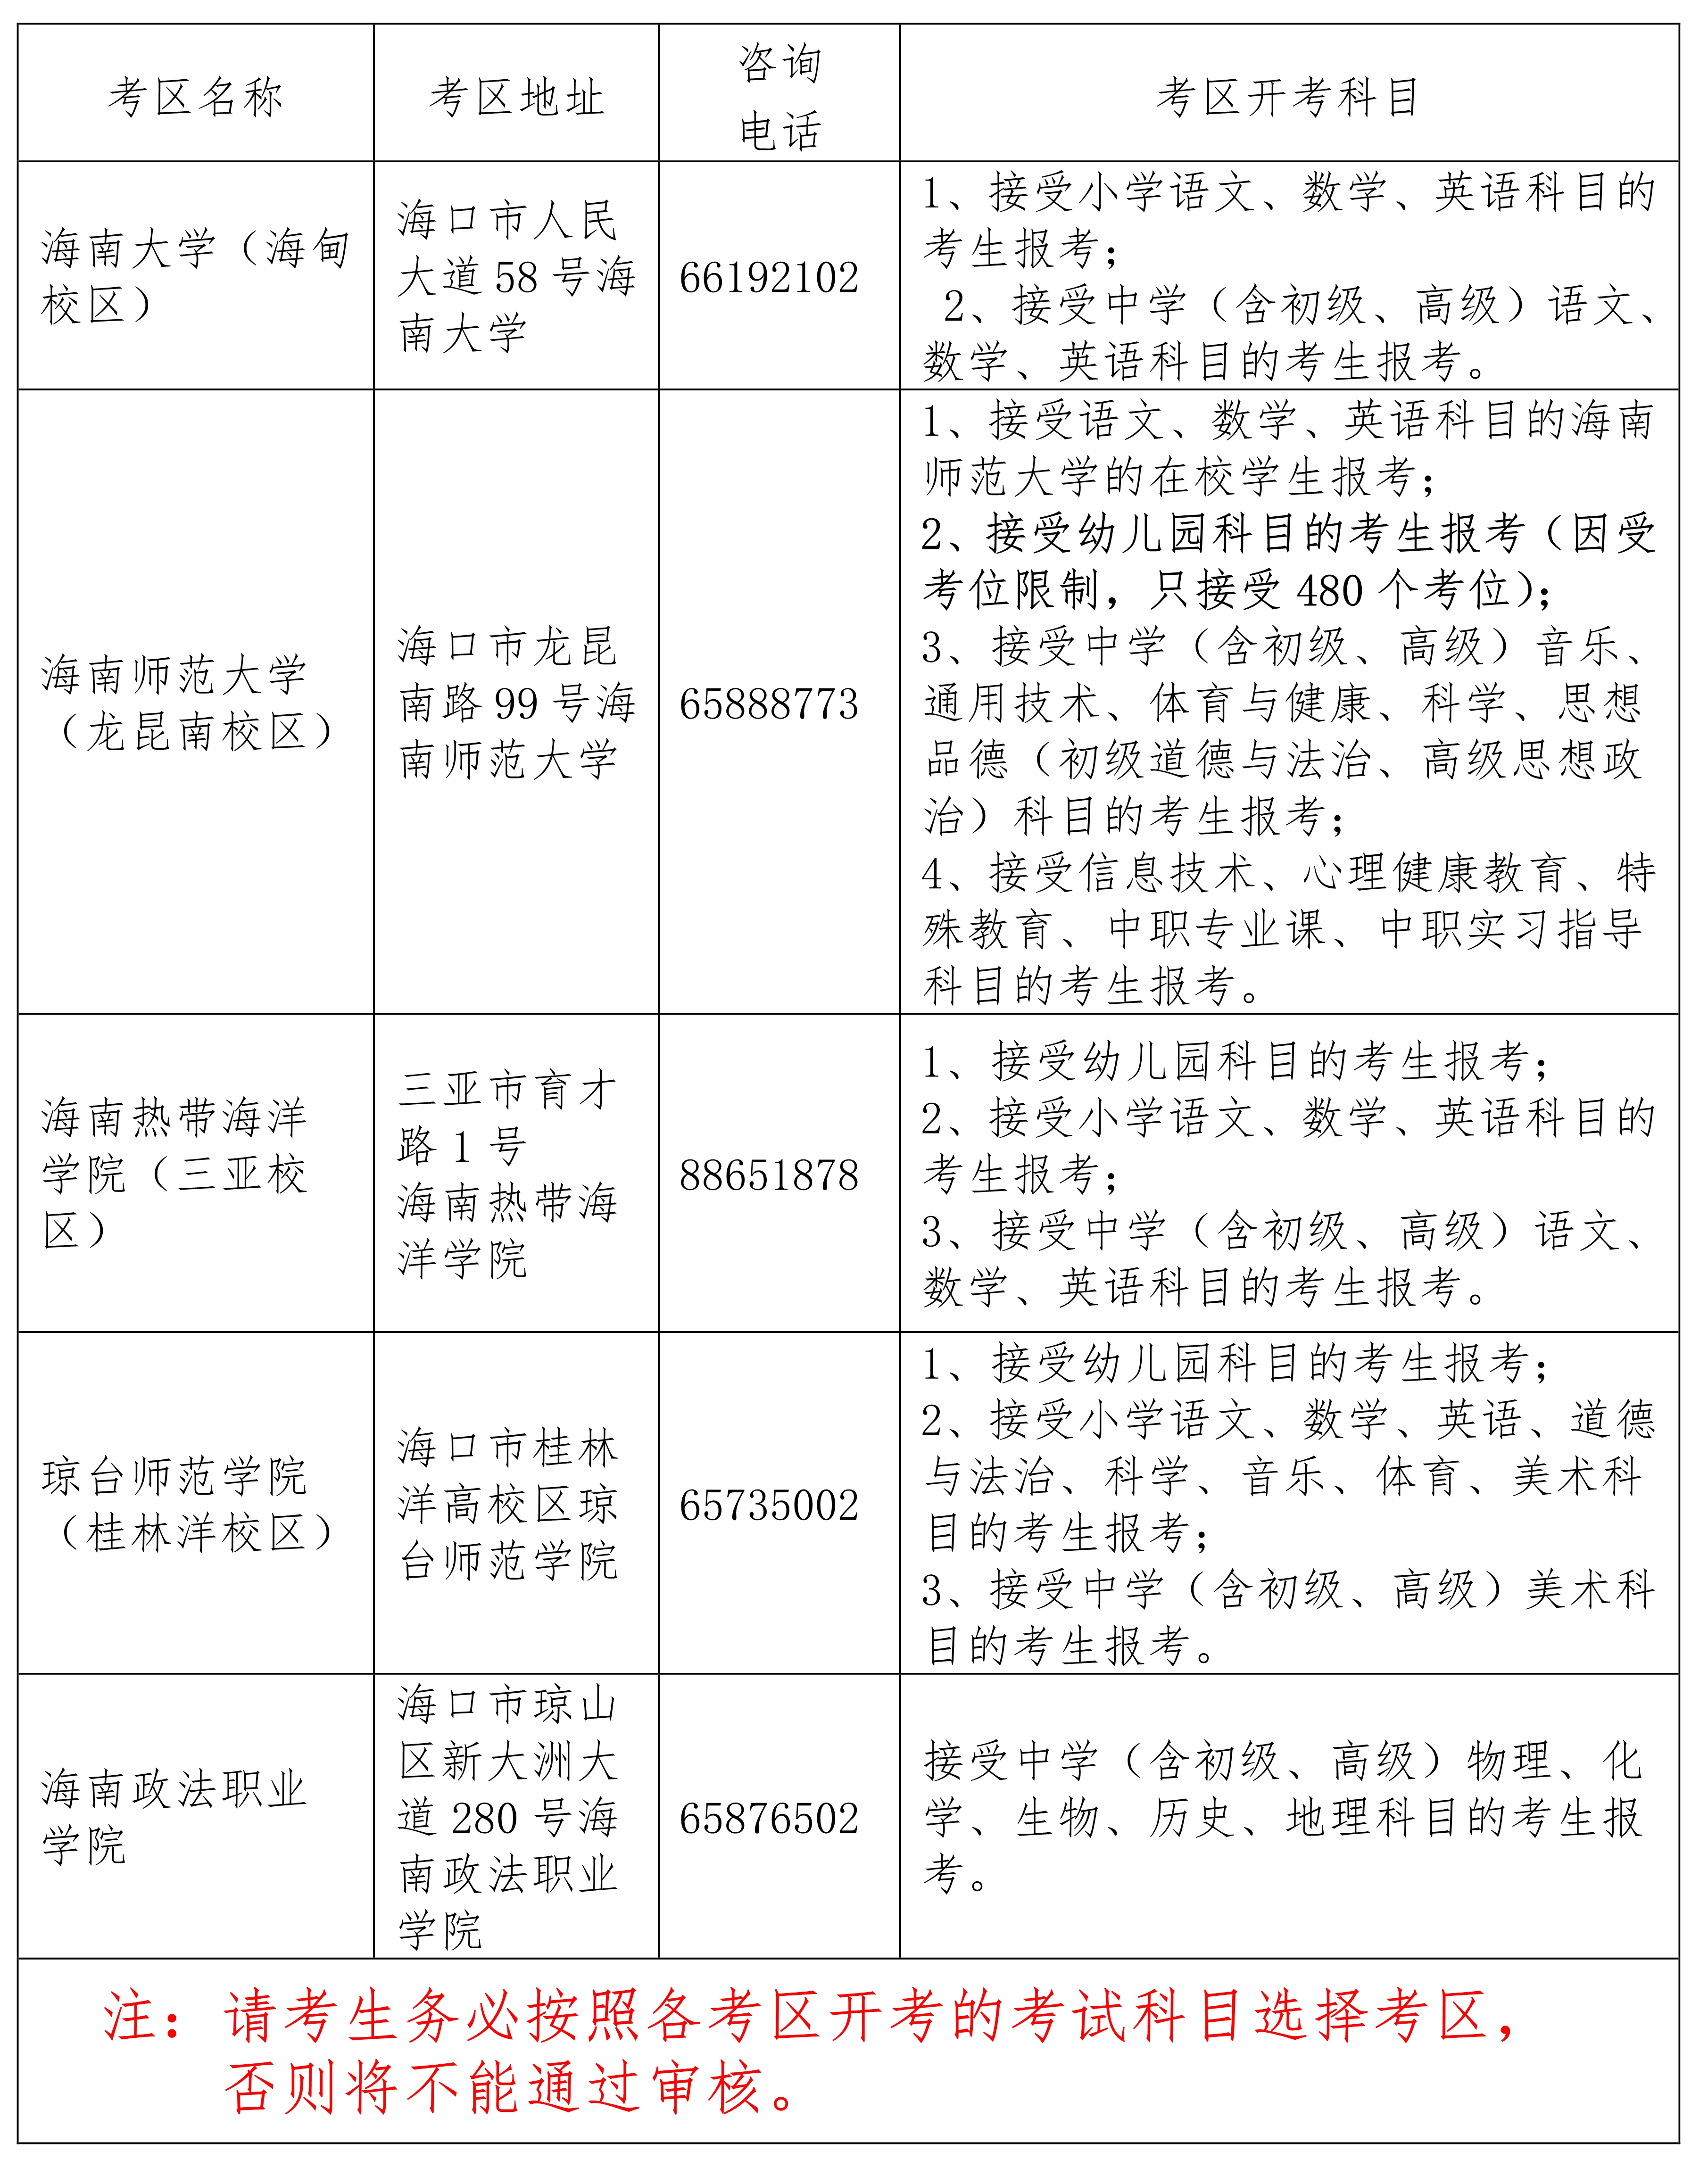 海南省2022年下半年教师资格考试面试报名及相关事项公告